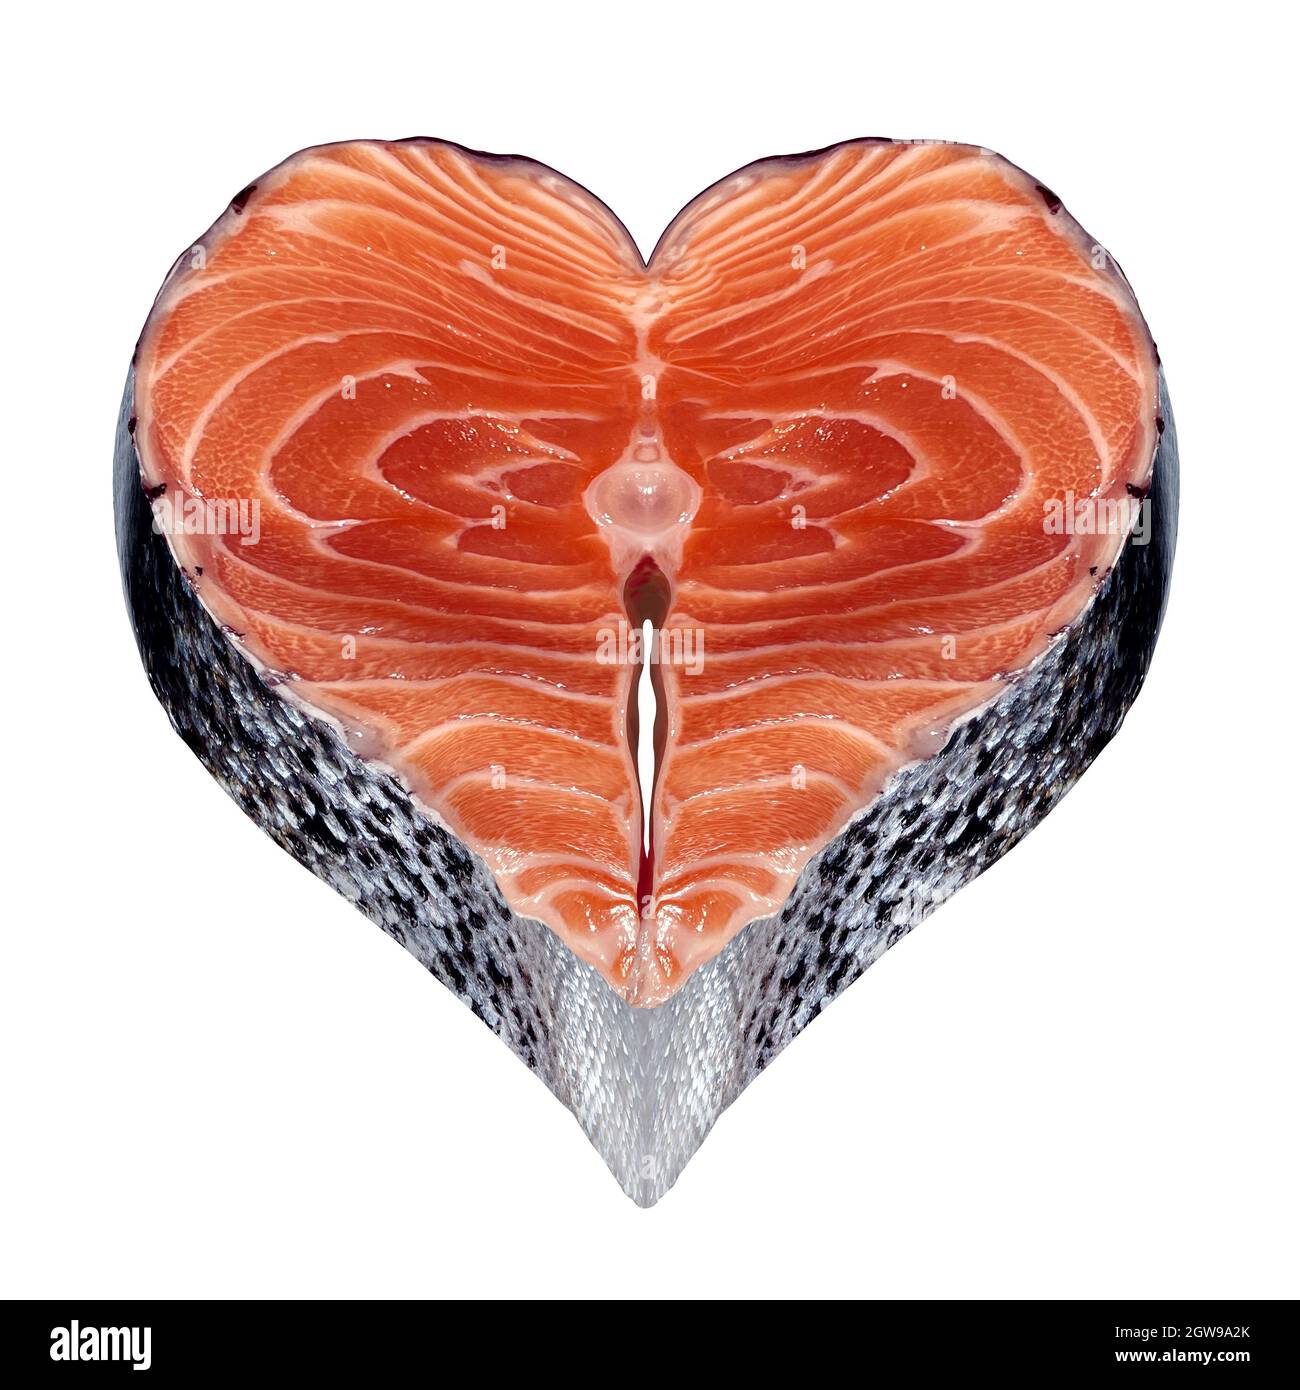 Symbole de poisson sain comme fruits de mer frais avec un steak de saumon en forme de coeur comme une icône de la source alimentaire saine omega-3. Banque D'Images